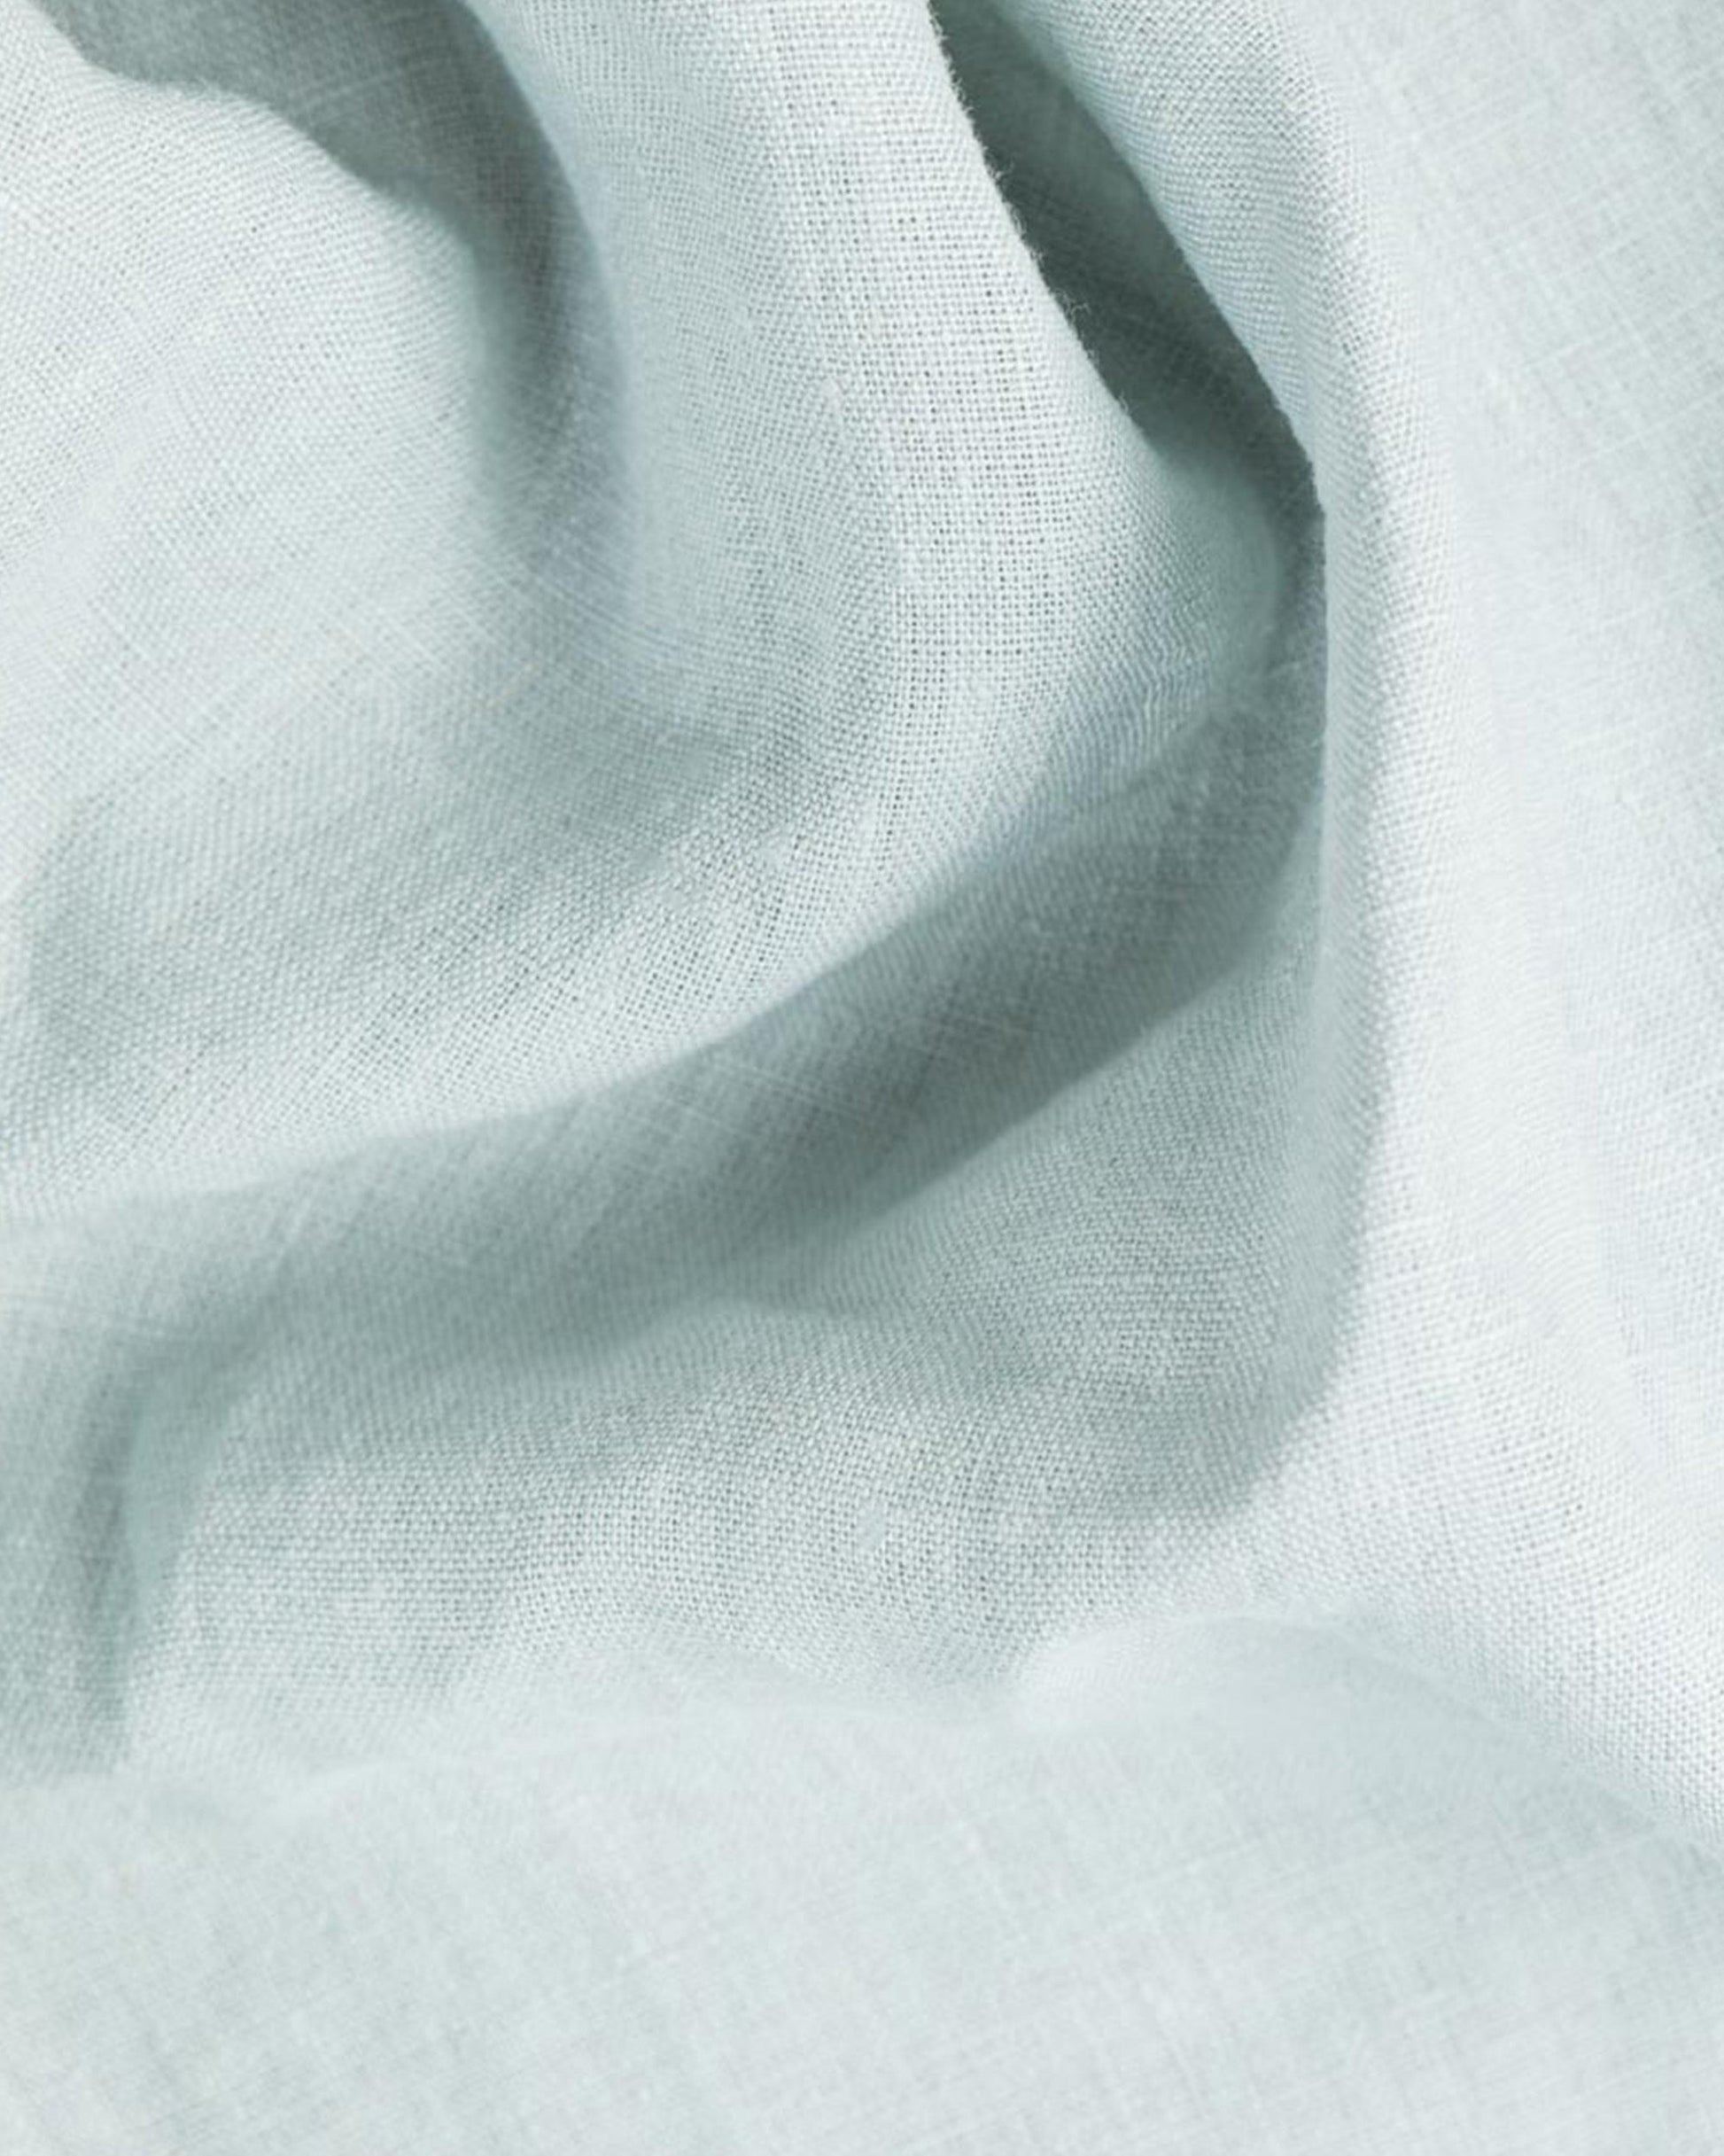 Dusty Blue Linen tablecloth - MagicLinen